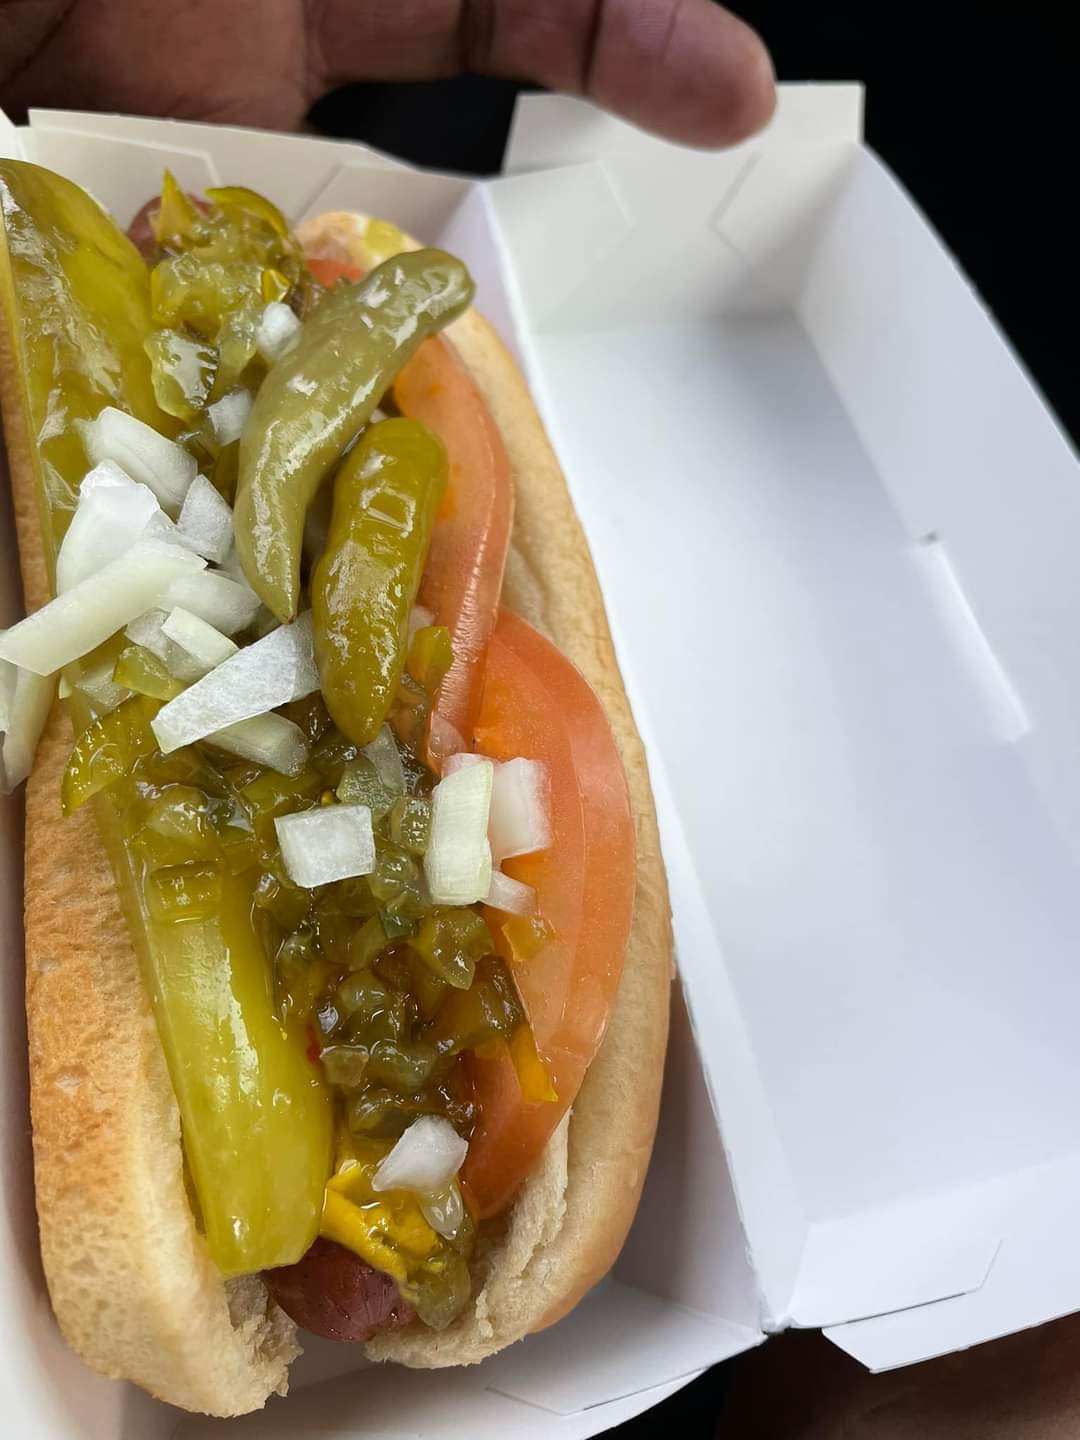 Vegan hot dog from Wienerschnitzel 